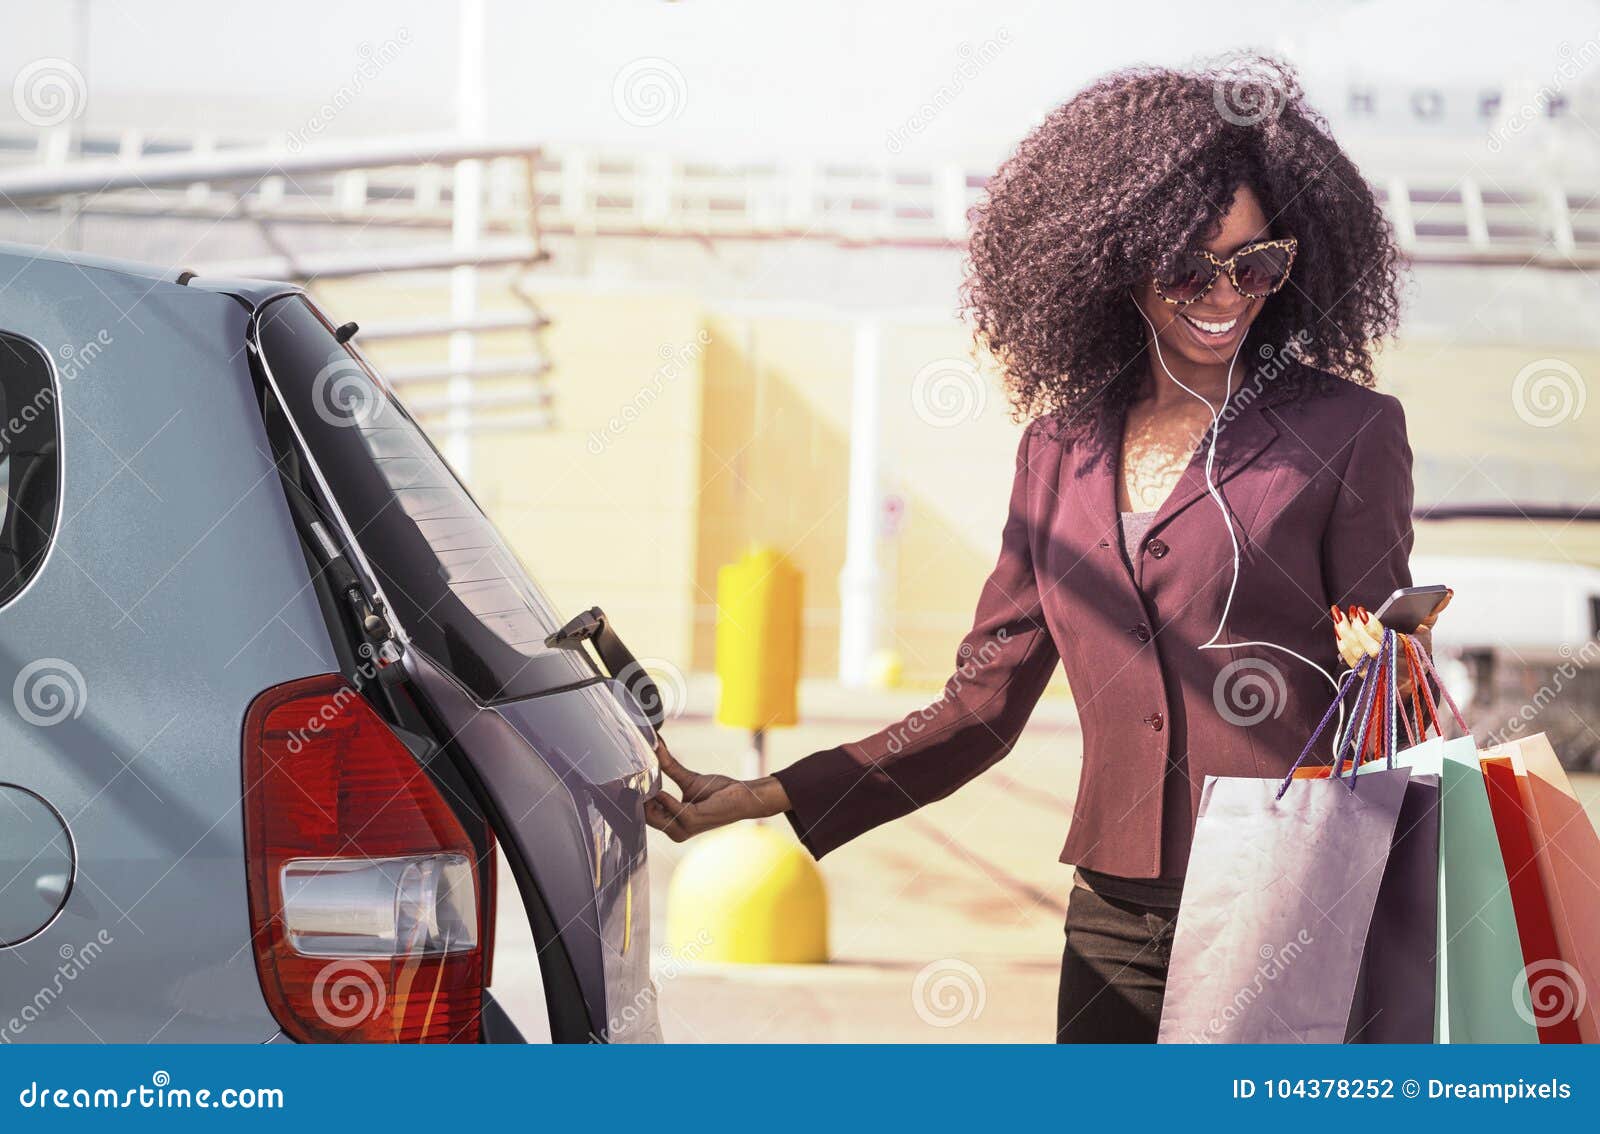 De gelukkige Afrikaanse vrouw met het winkelen doet het openen auto in zakken en het texting op mobiele telefoon. Het vrij modieuze zwarte die en haar auto met het winkelen glimlachen openen doet in hand het gebruiken smartphone in zakken